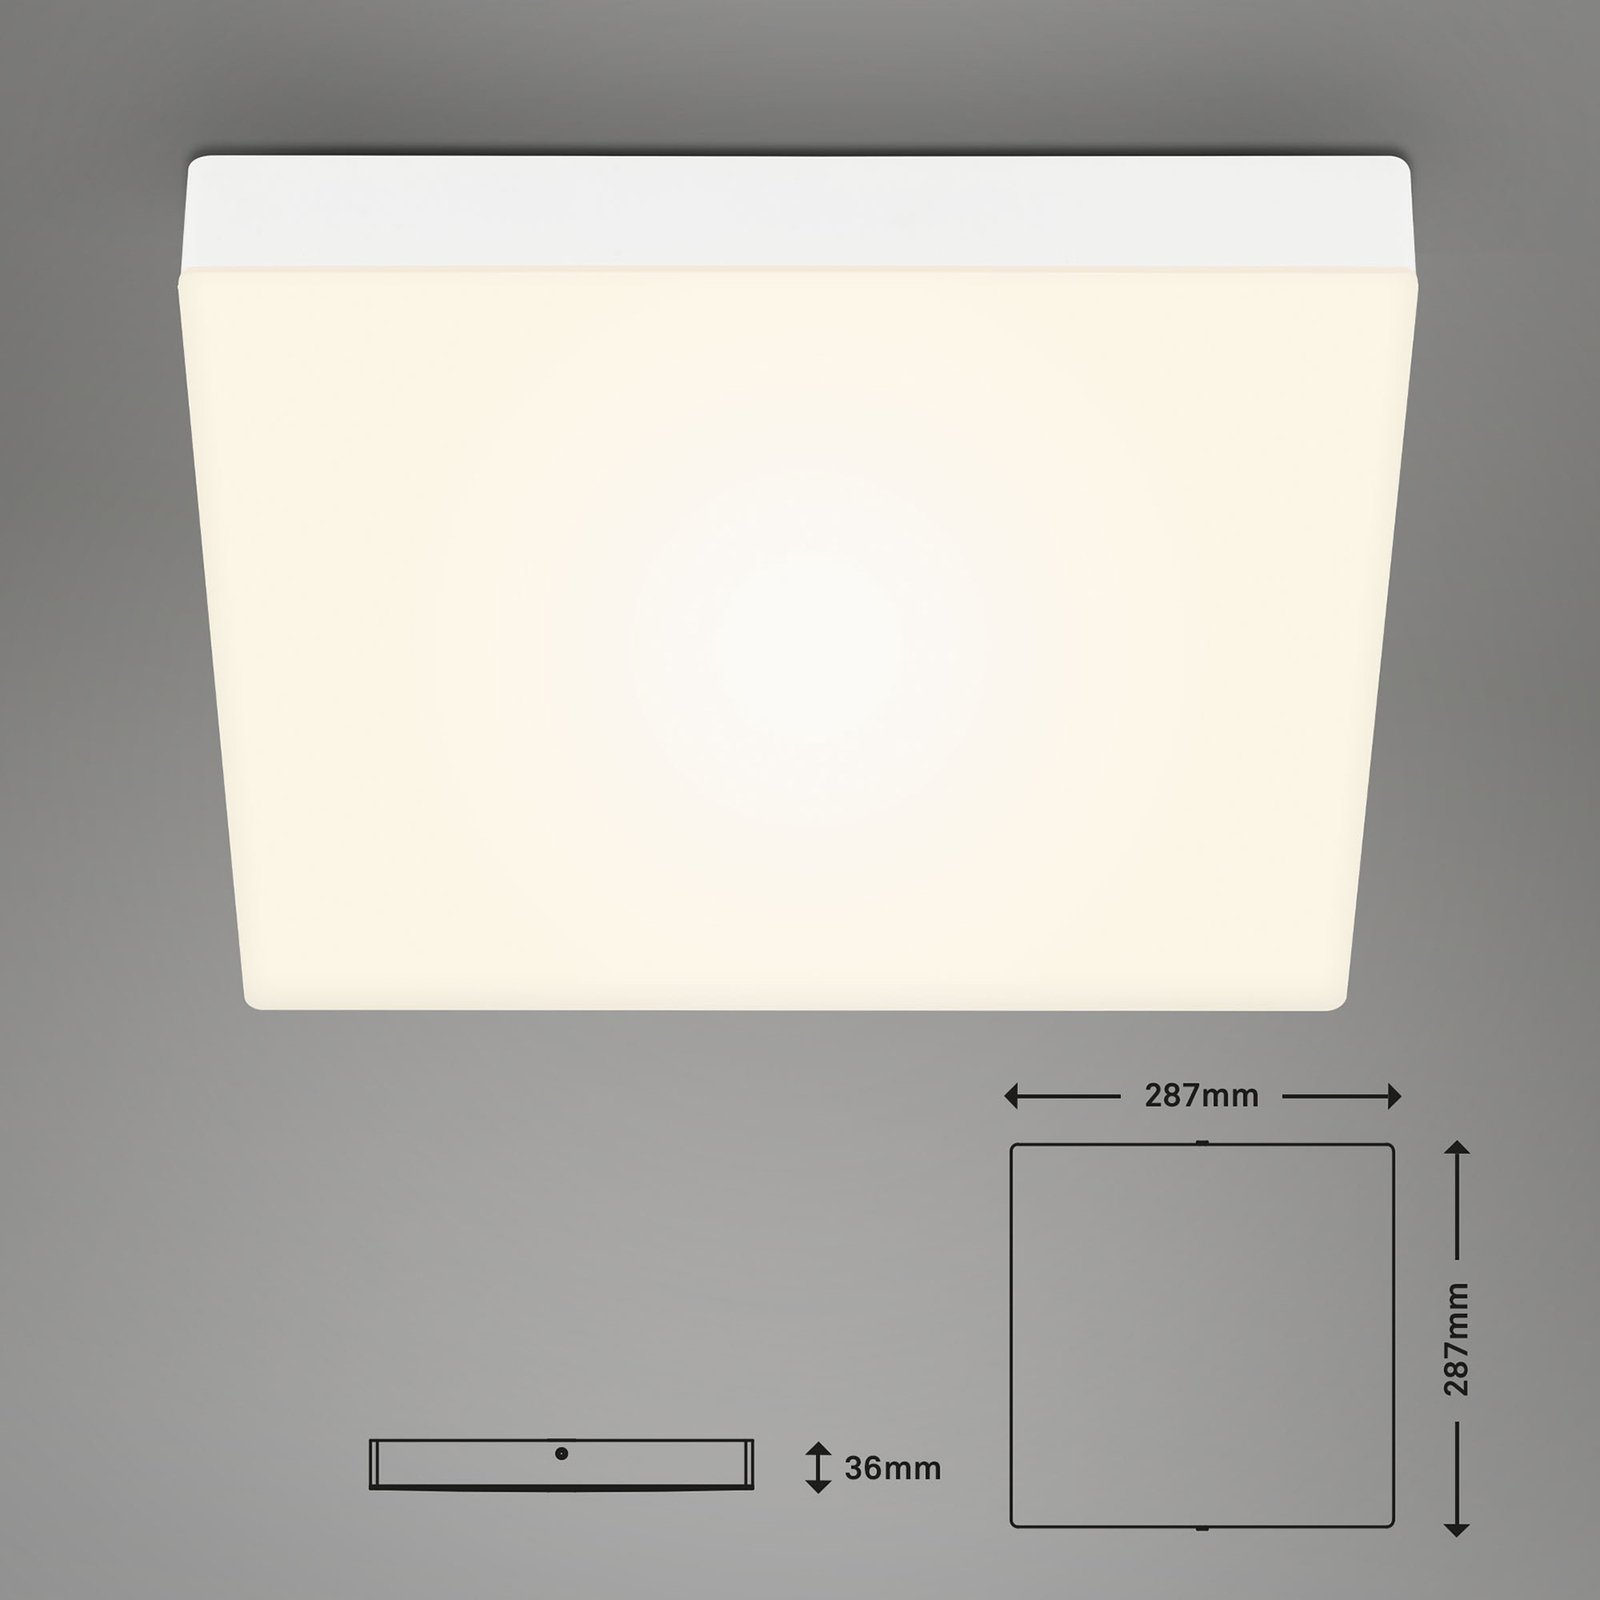 LED lubinis šviestuvas "Flame", 3000K, 28,7x28,7 cm, baltas